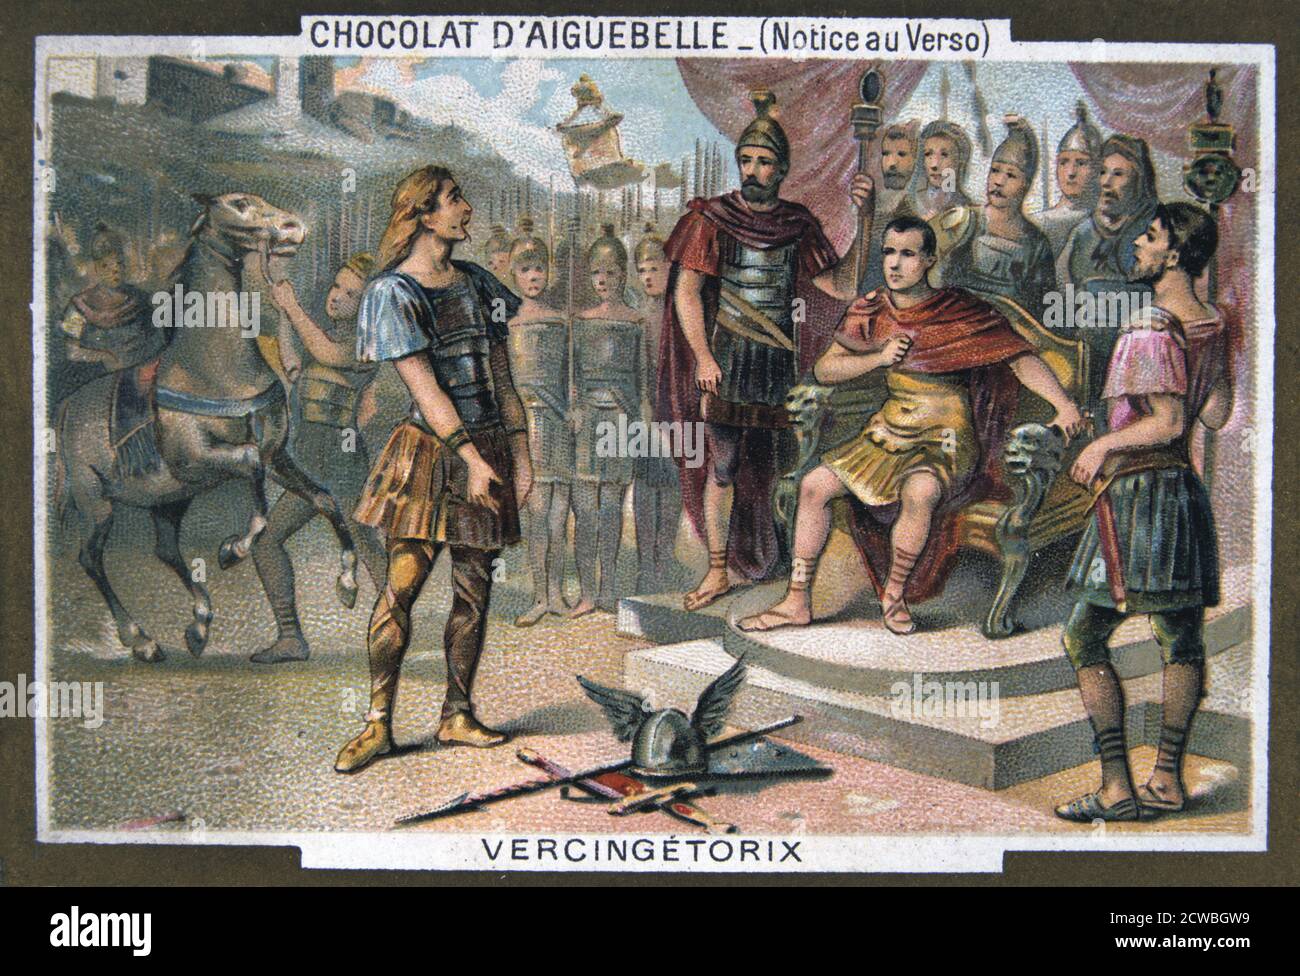 Carte photo du XIXe siècle, montrant Vercingetorix en cession à Julius Caesar, c 46 av. J.-C. Le chef gaulois Vercingetorix (mort 46 av. J.-C.) fut vaincu et capturé par Julius Caesar (100-44 av. J.-C.) à Alésia (près de Dijon en France). Vercingetorix a été emmené à Rome, où il a été humilié en étant paradé comme preuve de la grandeur de Rome, et a ensuite été mis à mort. Banque D'Images